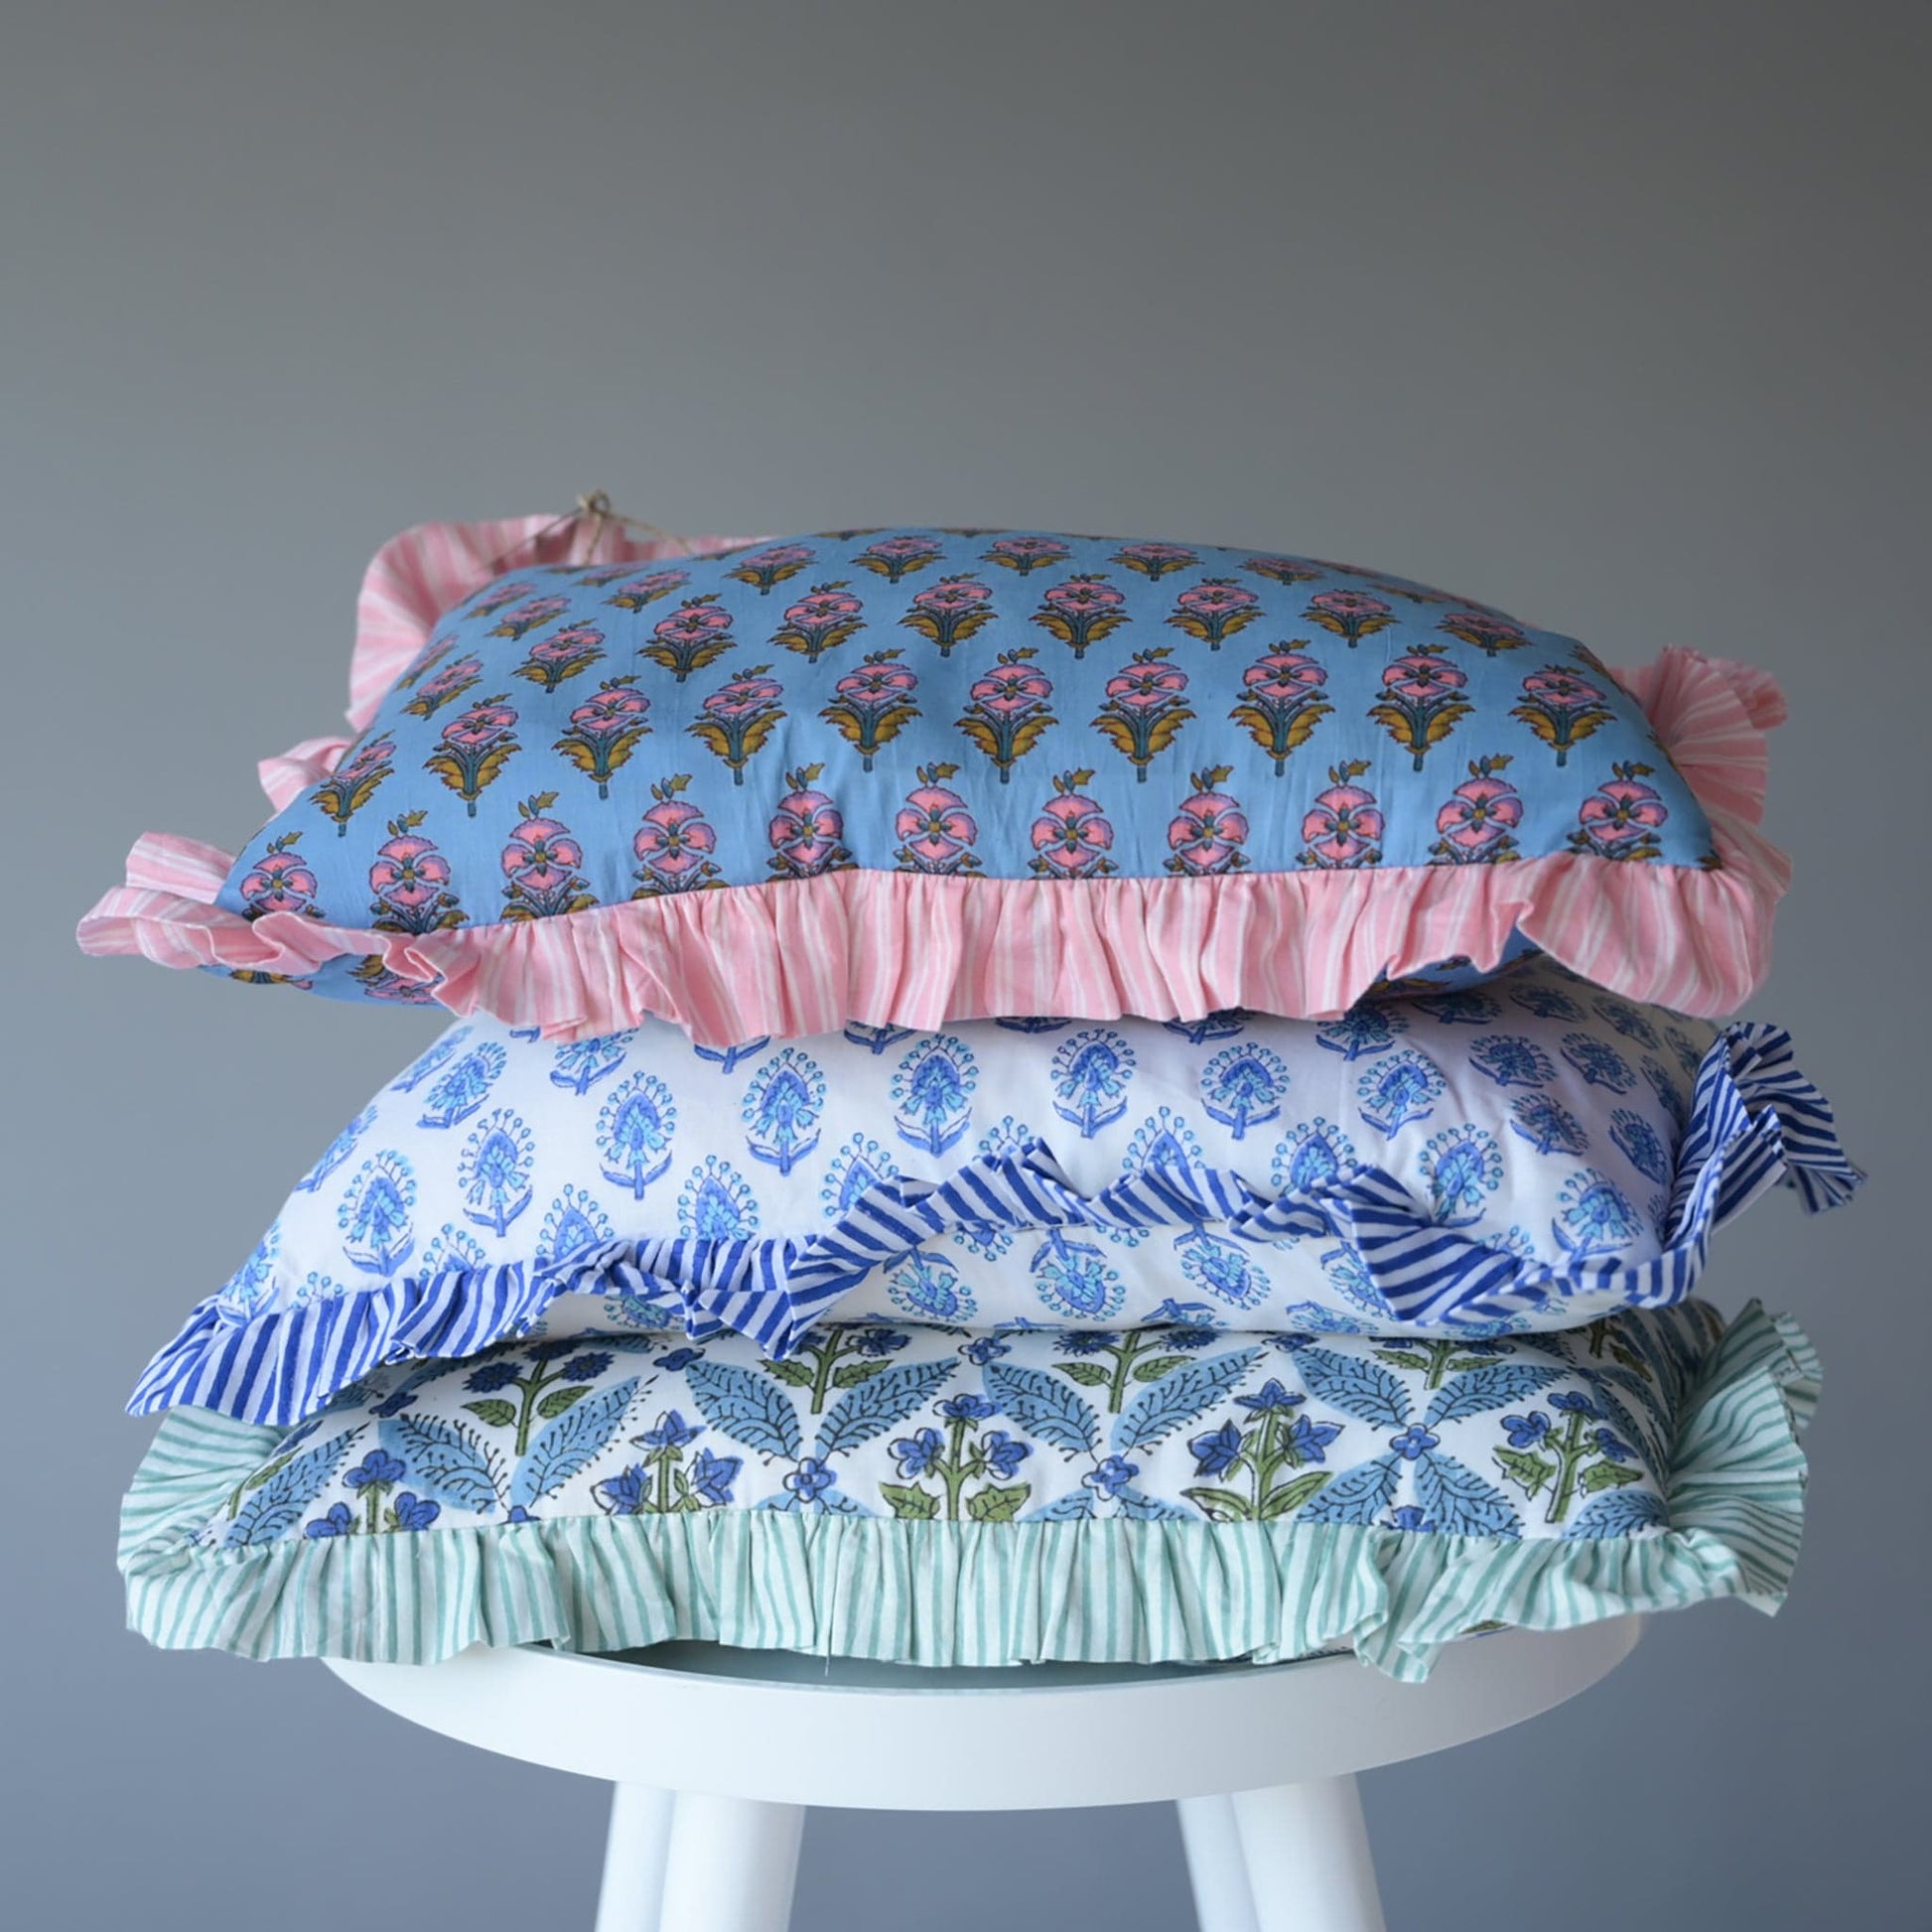 Cushions Small Ruffle Cushion - Blue Floral Symmetrical